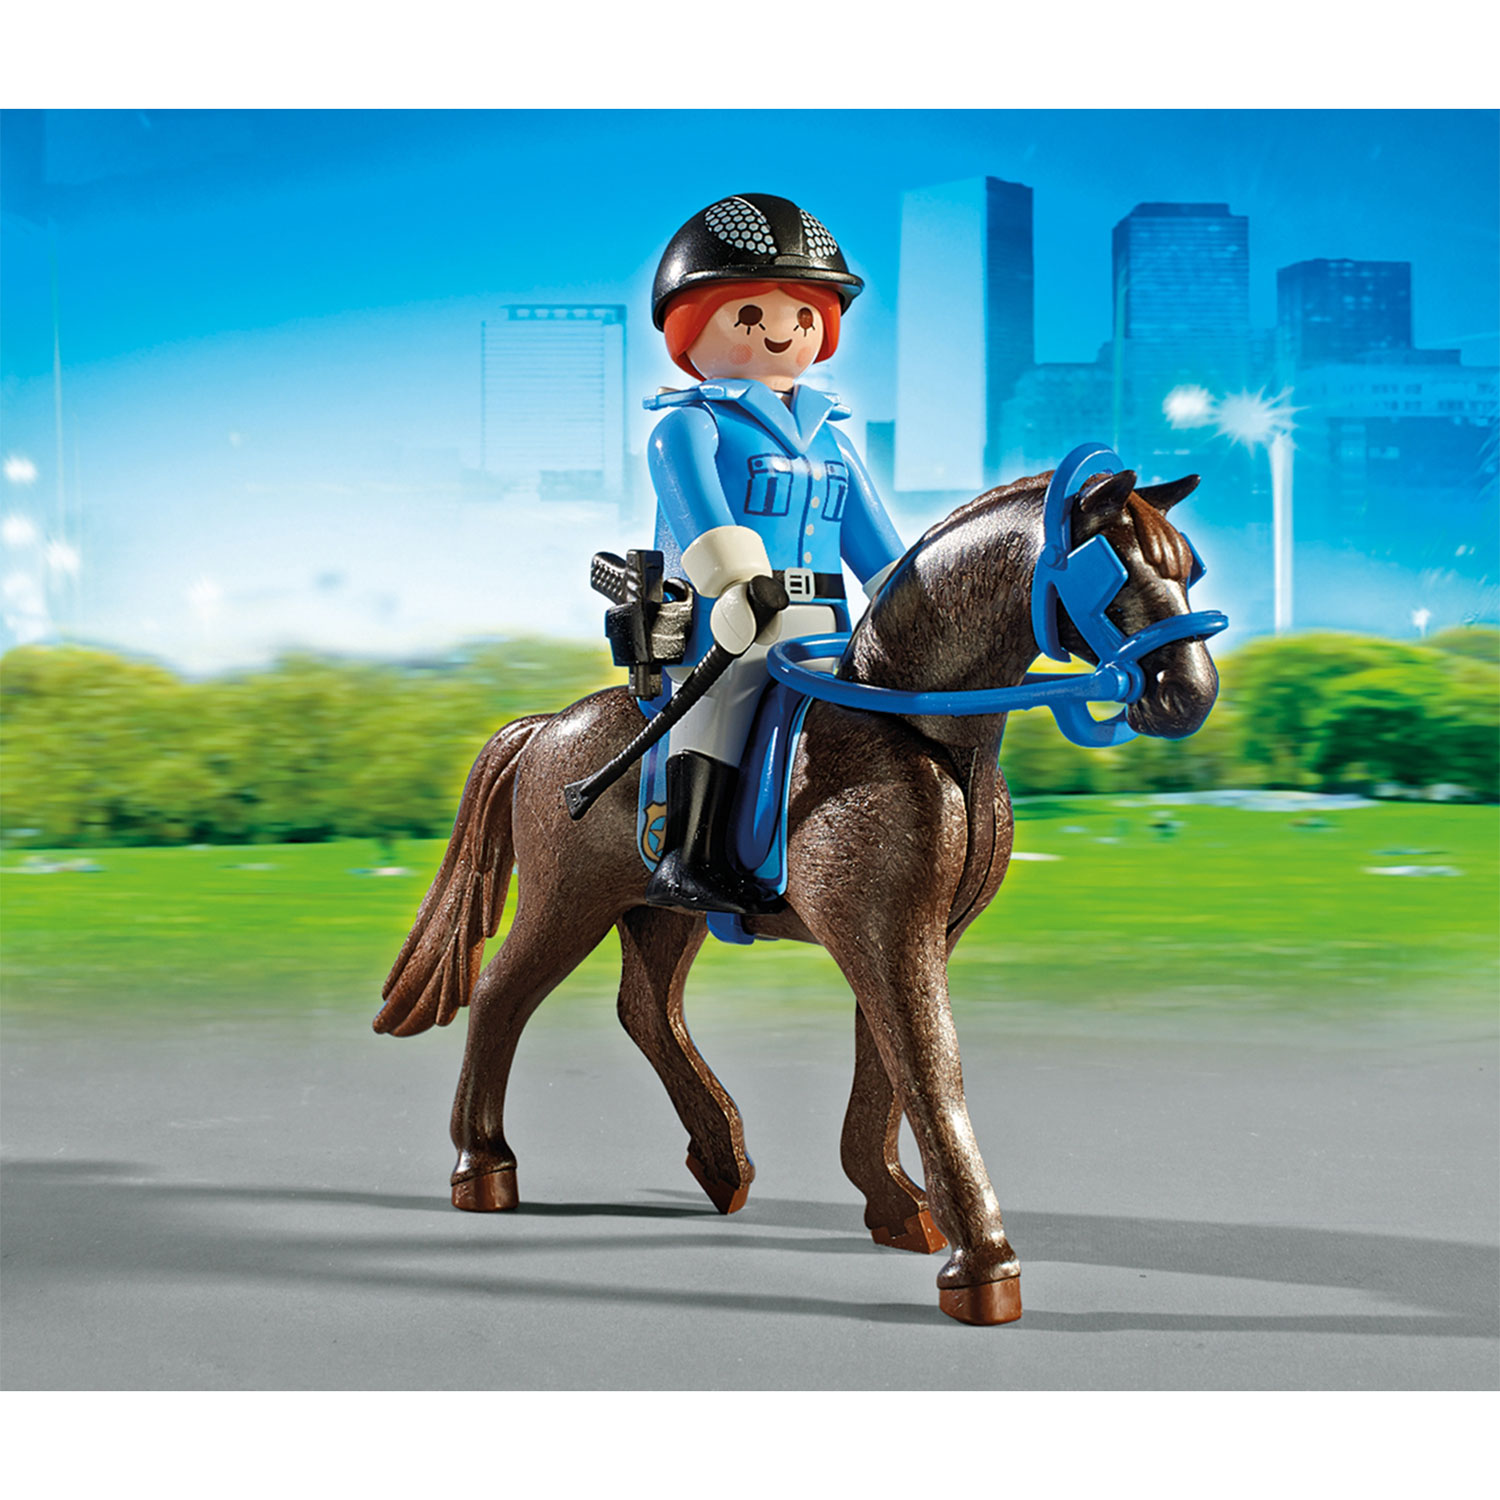 Triatleet Hilarisch Vorming Playmobil 6922 Politie met Paard en Trailer | Thimble Toys